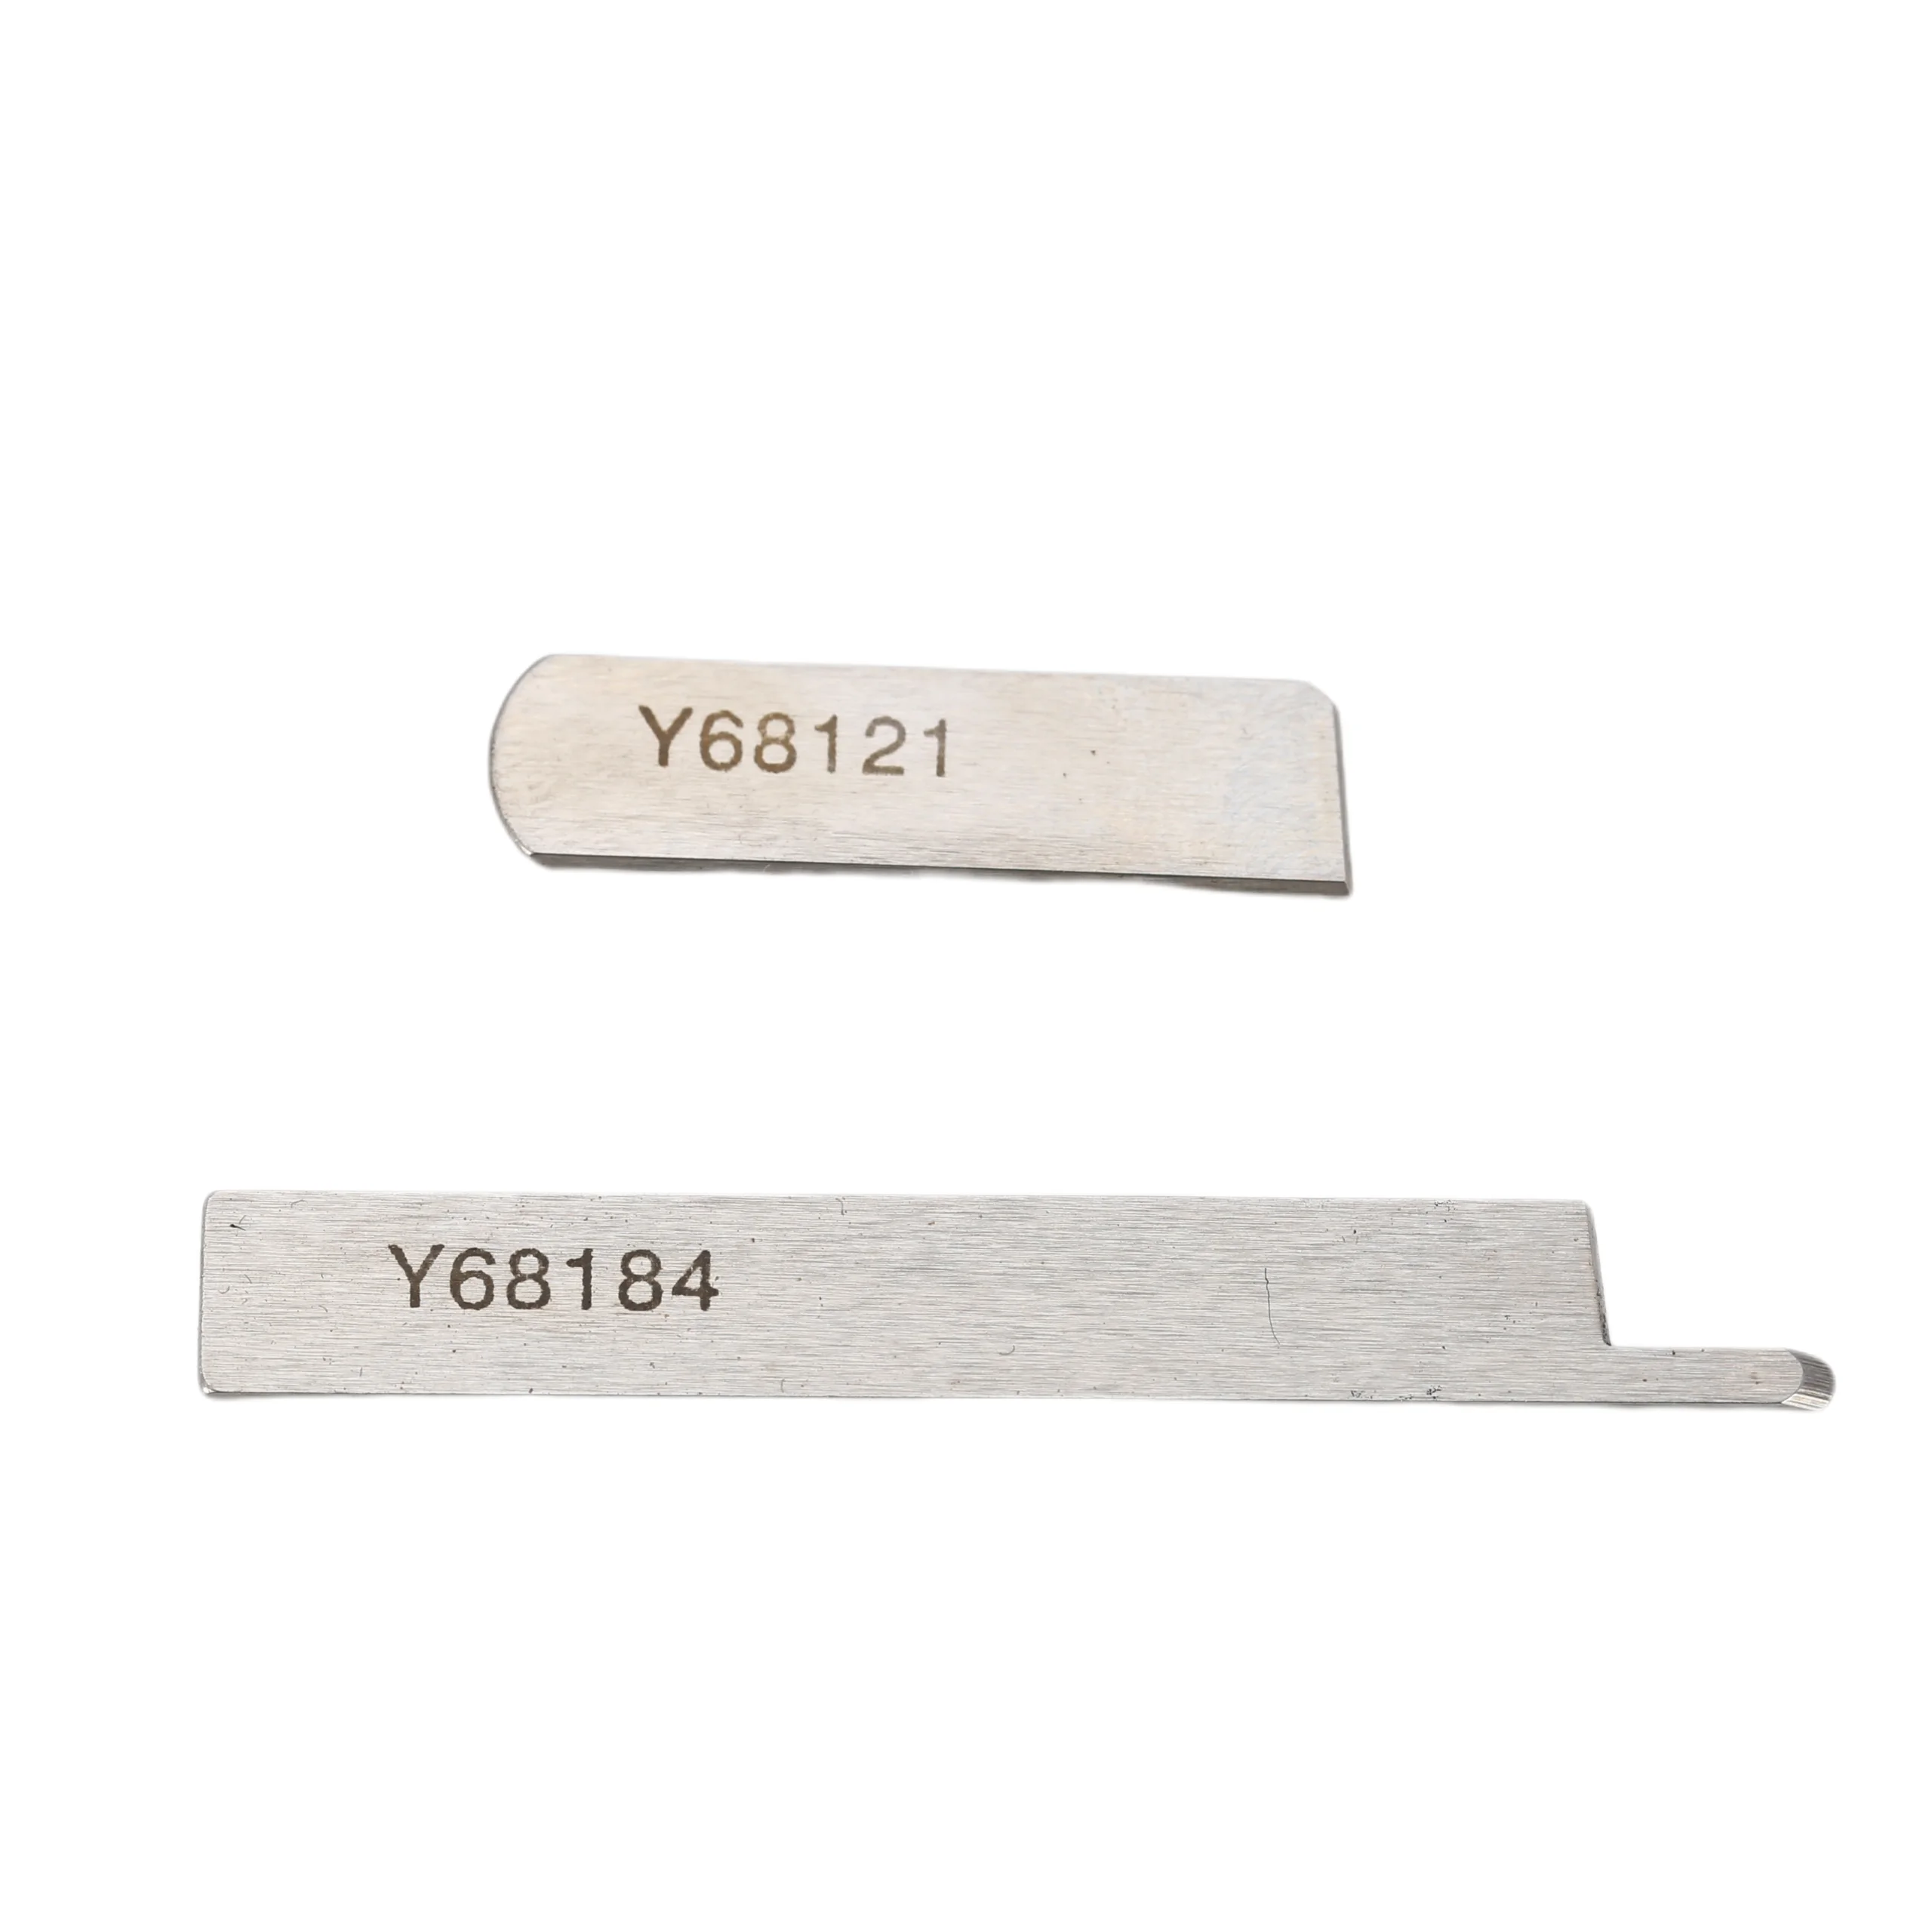 与板利器(Yoitariki) Replacement Blade, Only Replacement Blade KH – 12 12 mm